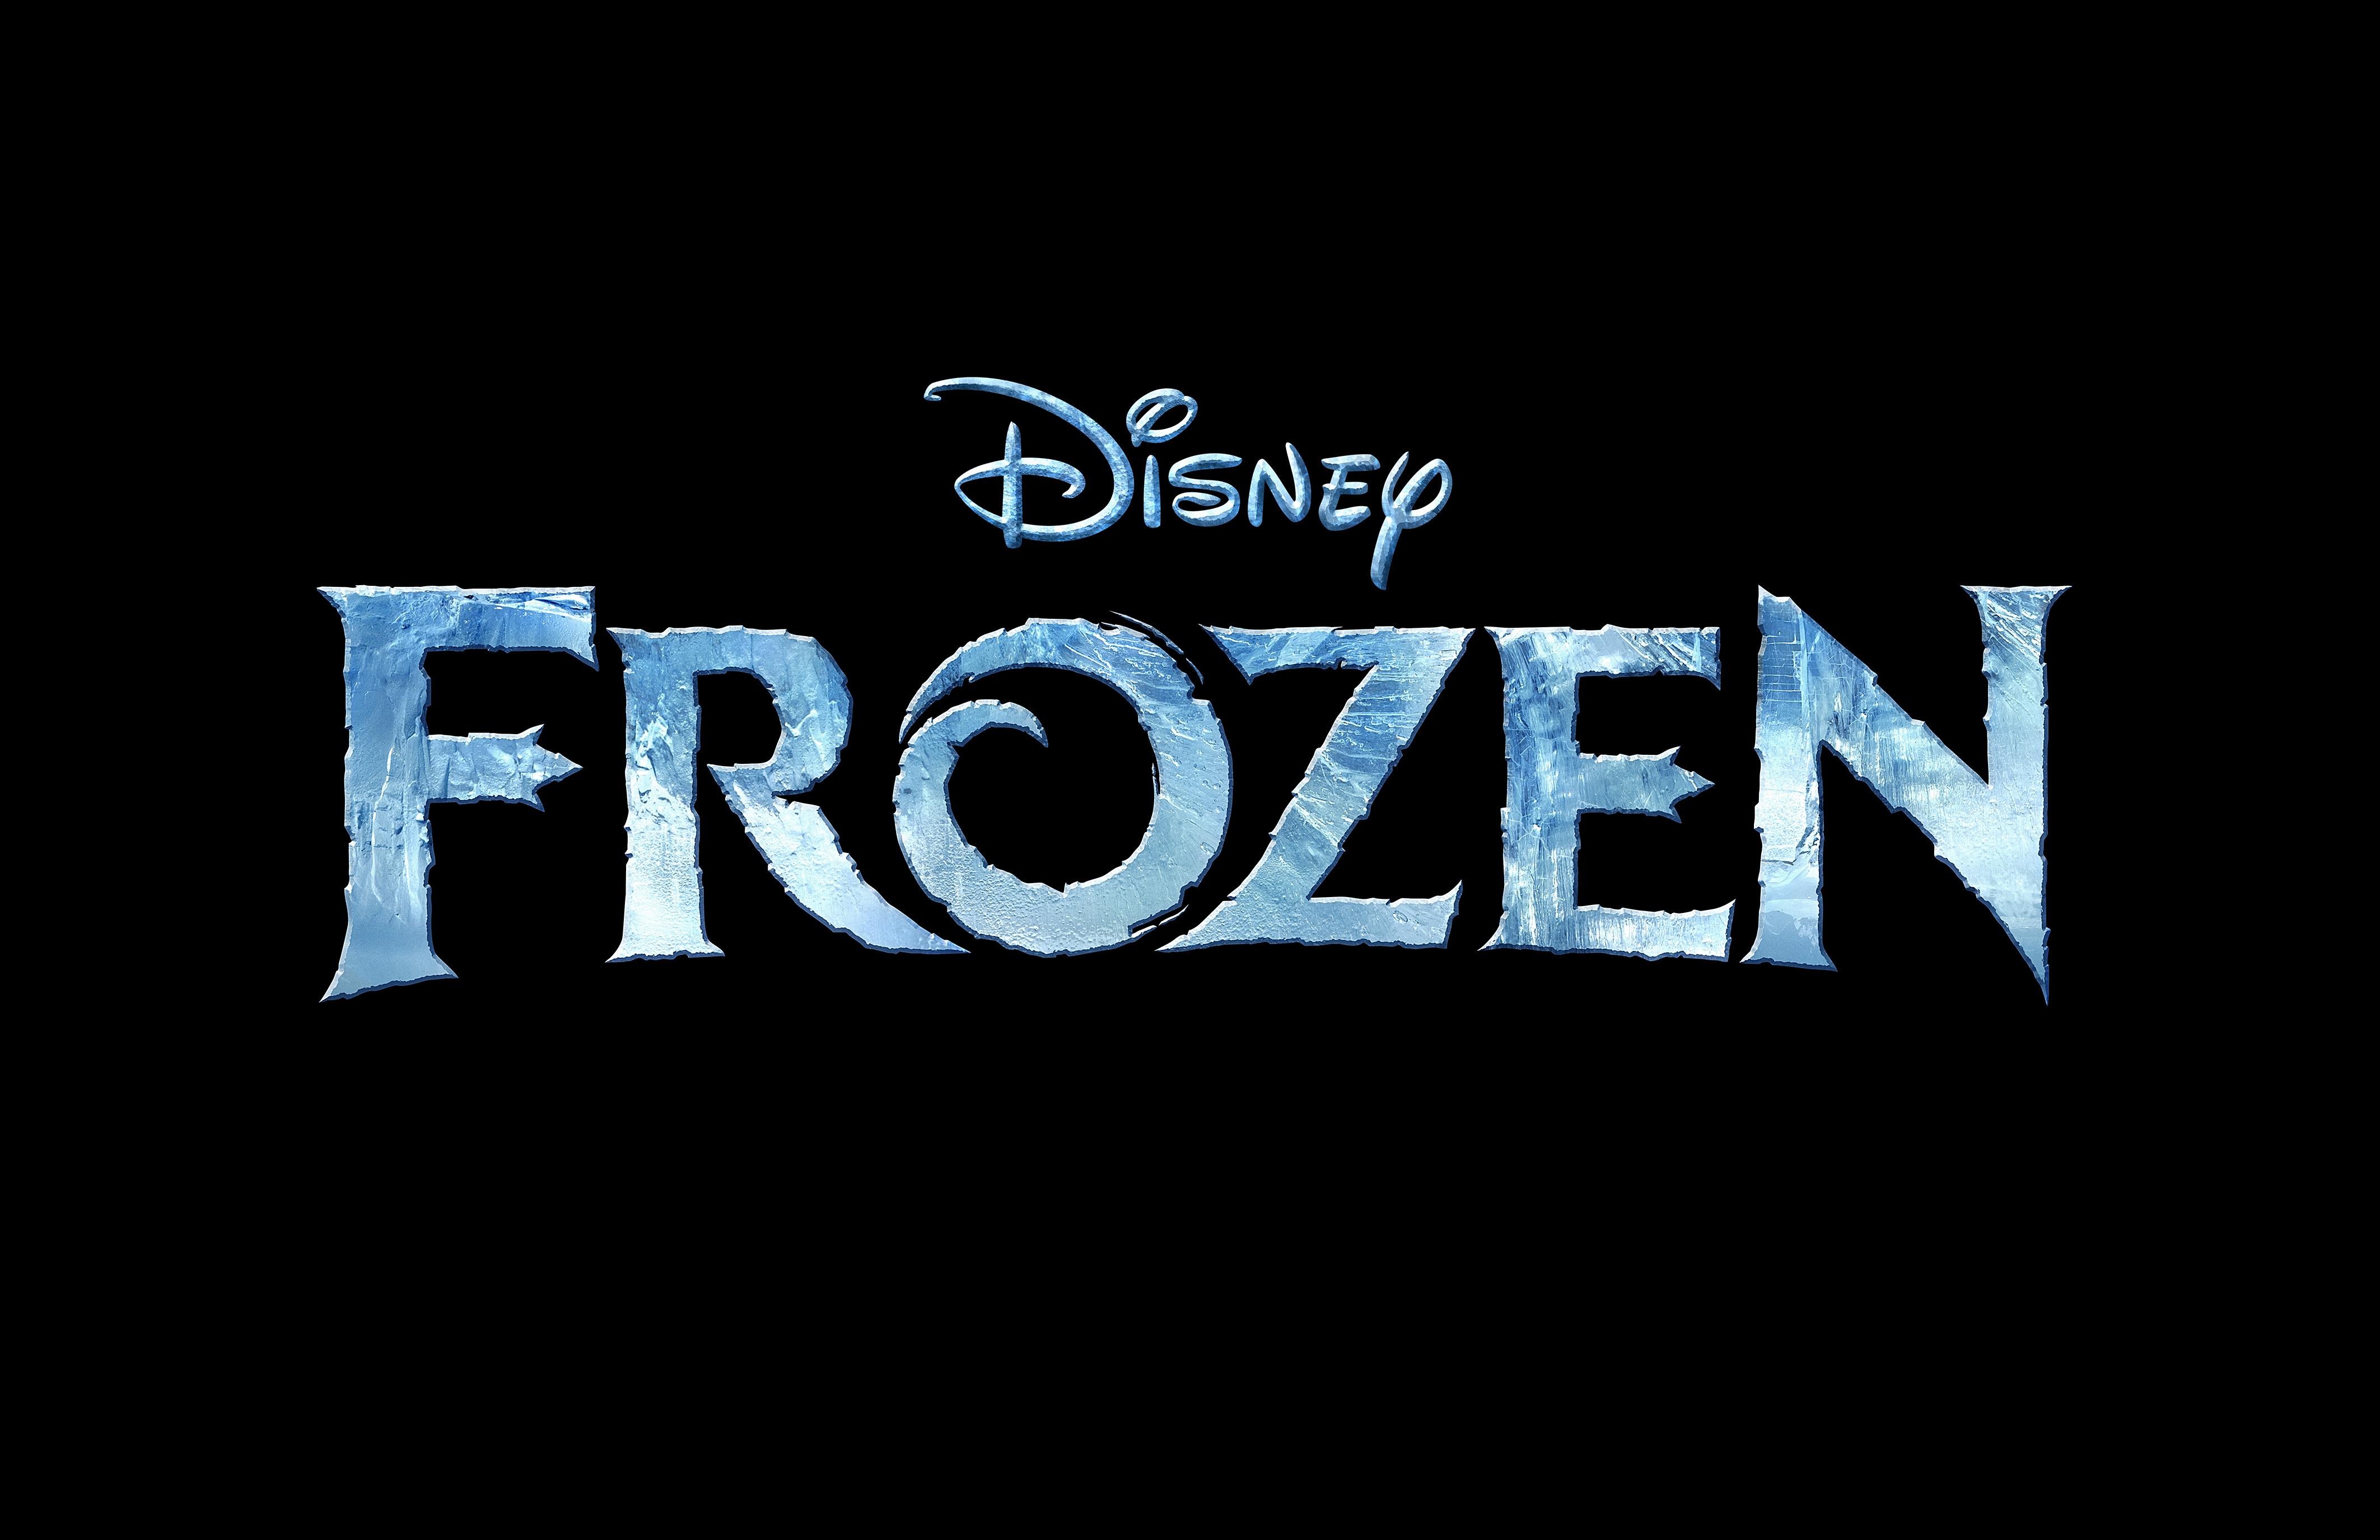 Frozen Movie Logo - Froz .5.31.12-logo-R22 - We Are Movie Geeks